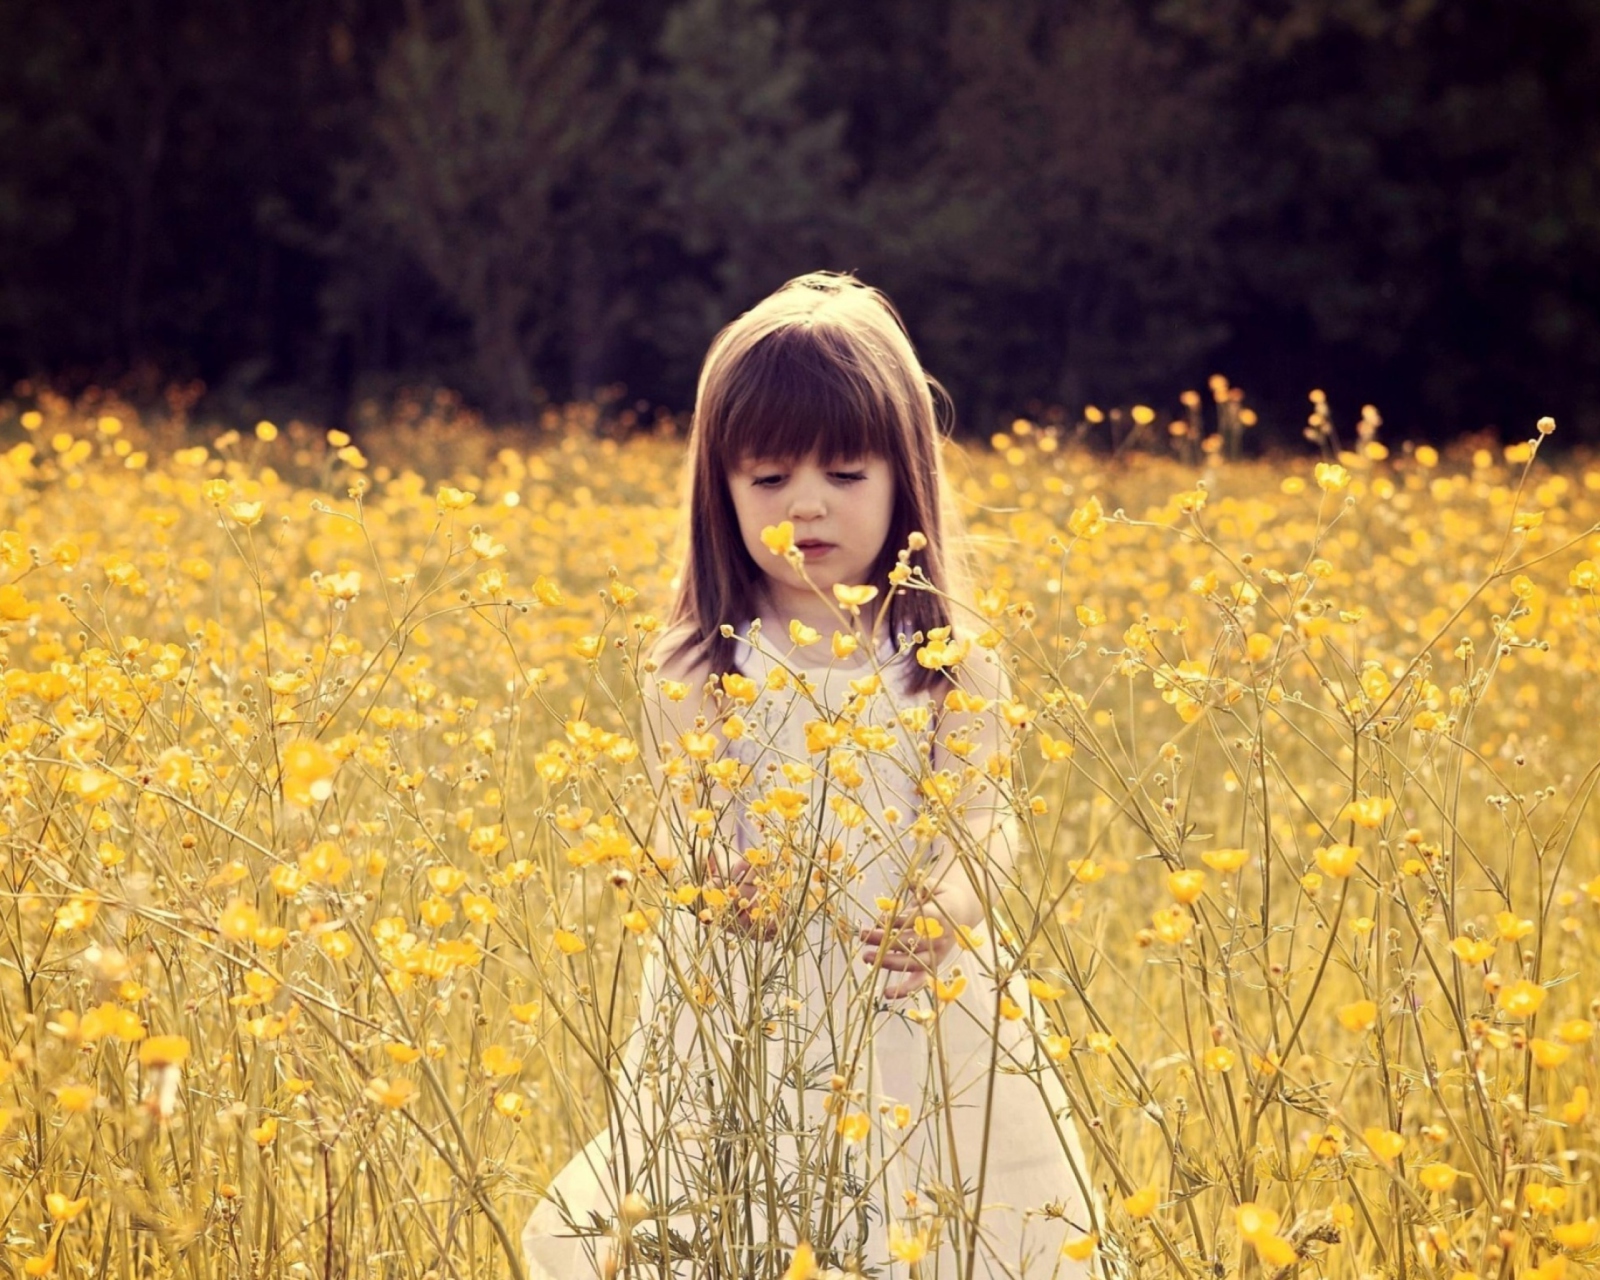 Cute Little Girl In Flower Field wallpaper 1600x1280